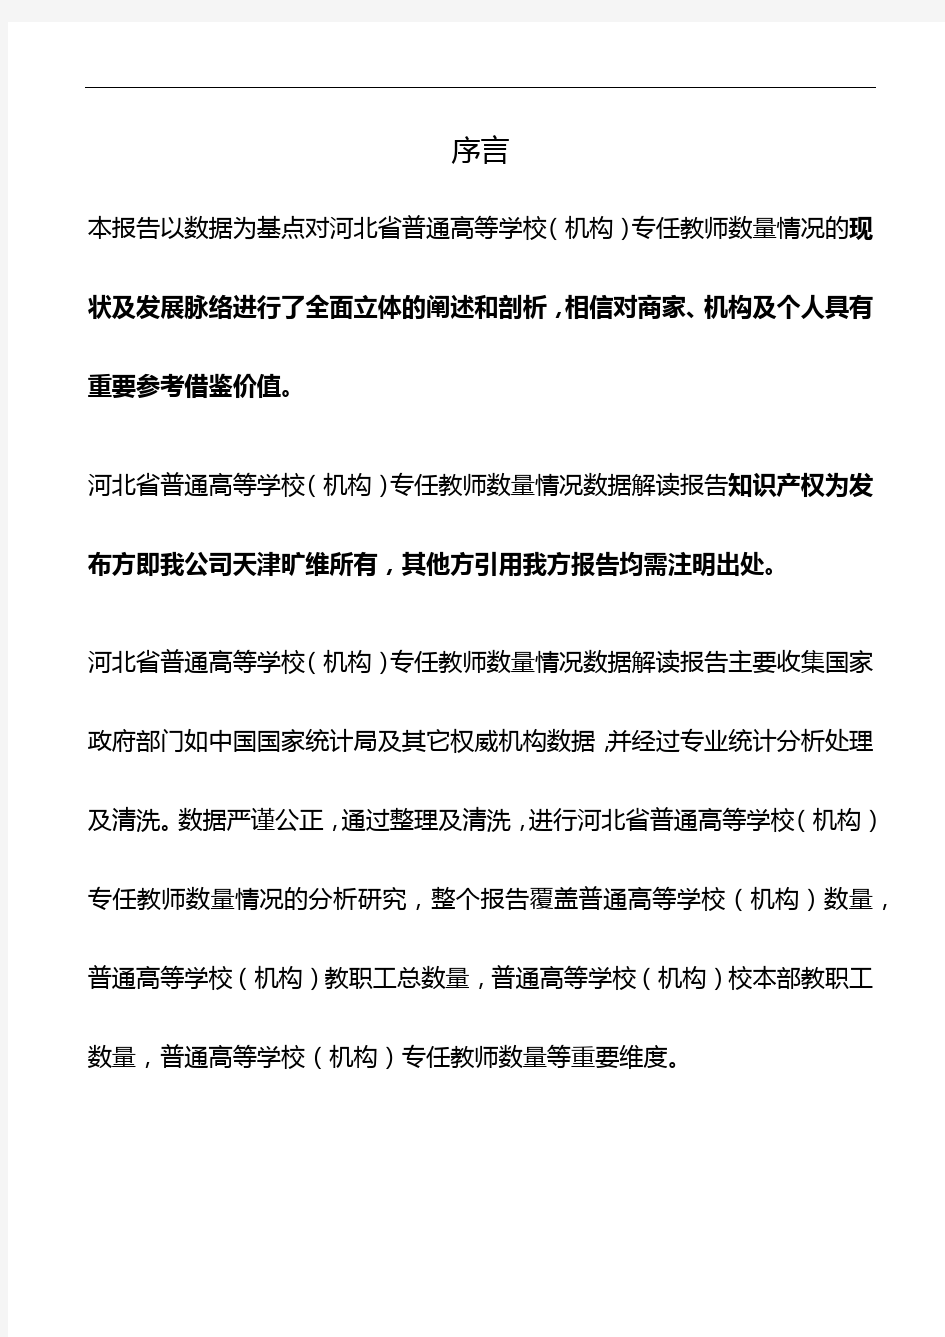 河北省普通高等学校(机构)专任教师数量情况3年数据解读报告2019版